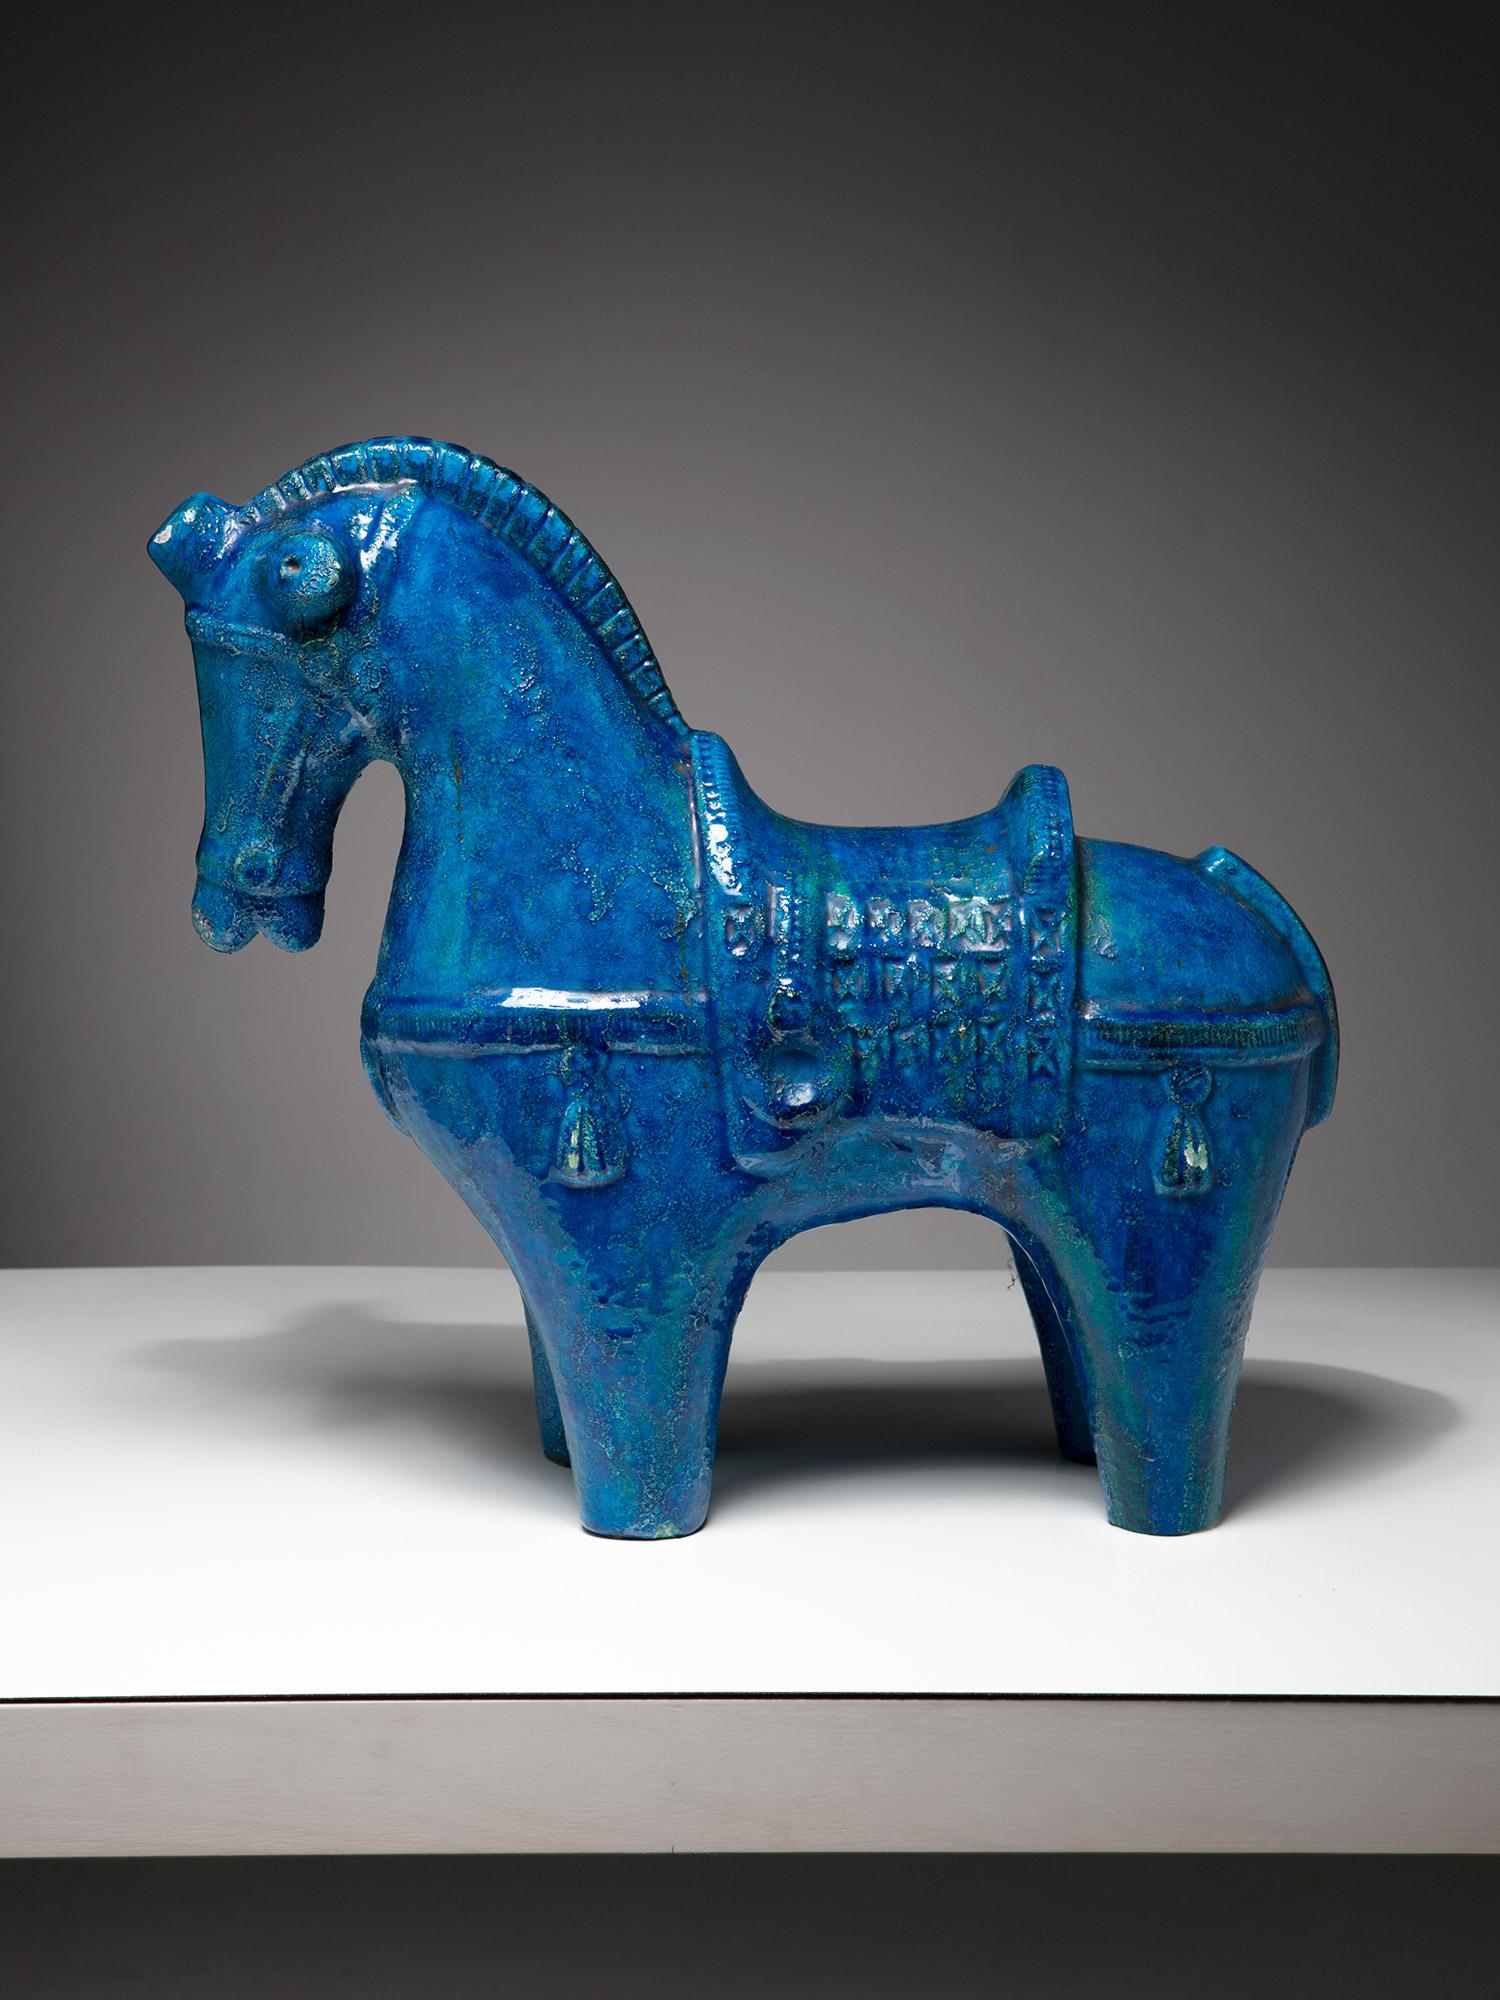 Sculpture de cheval debout en céramique réalisée par Aldo Londi pour Bitossi.
La glaçure cristalline bleue met en valeur les détails de la décoration.
